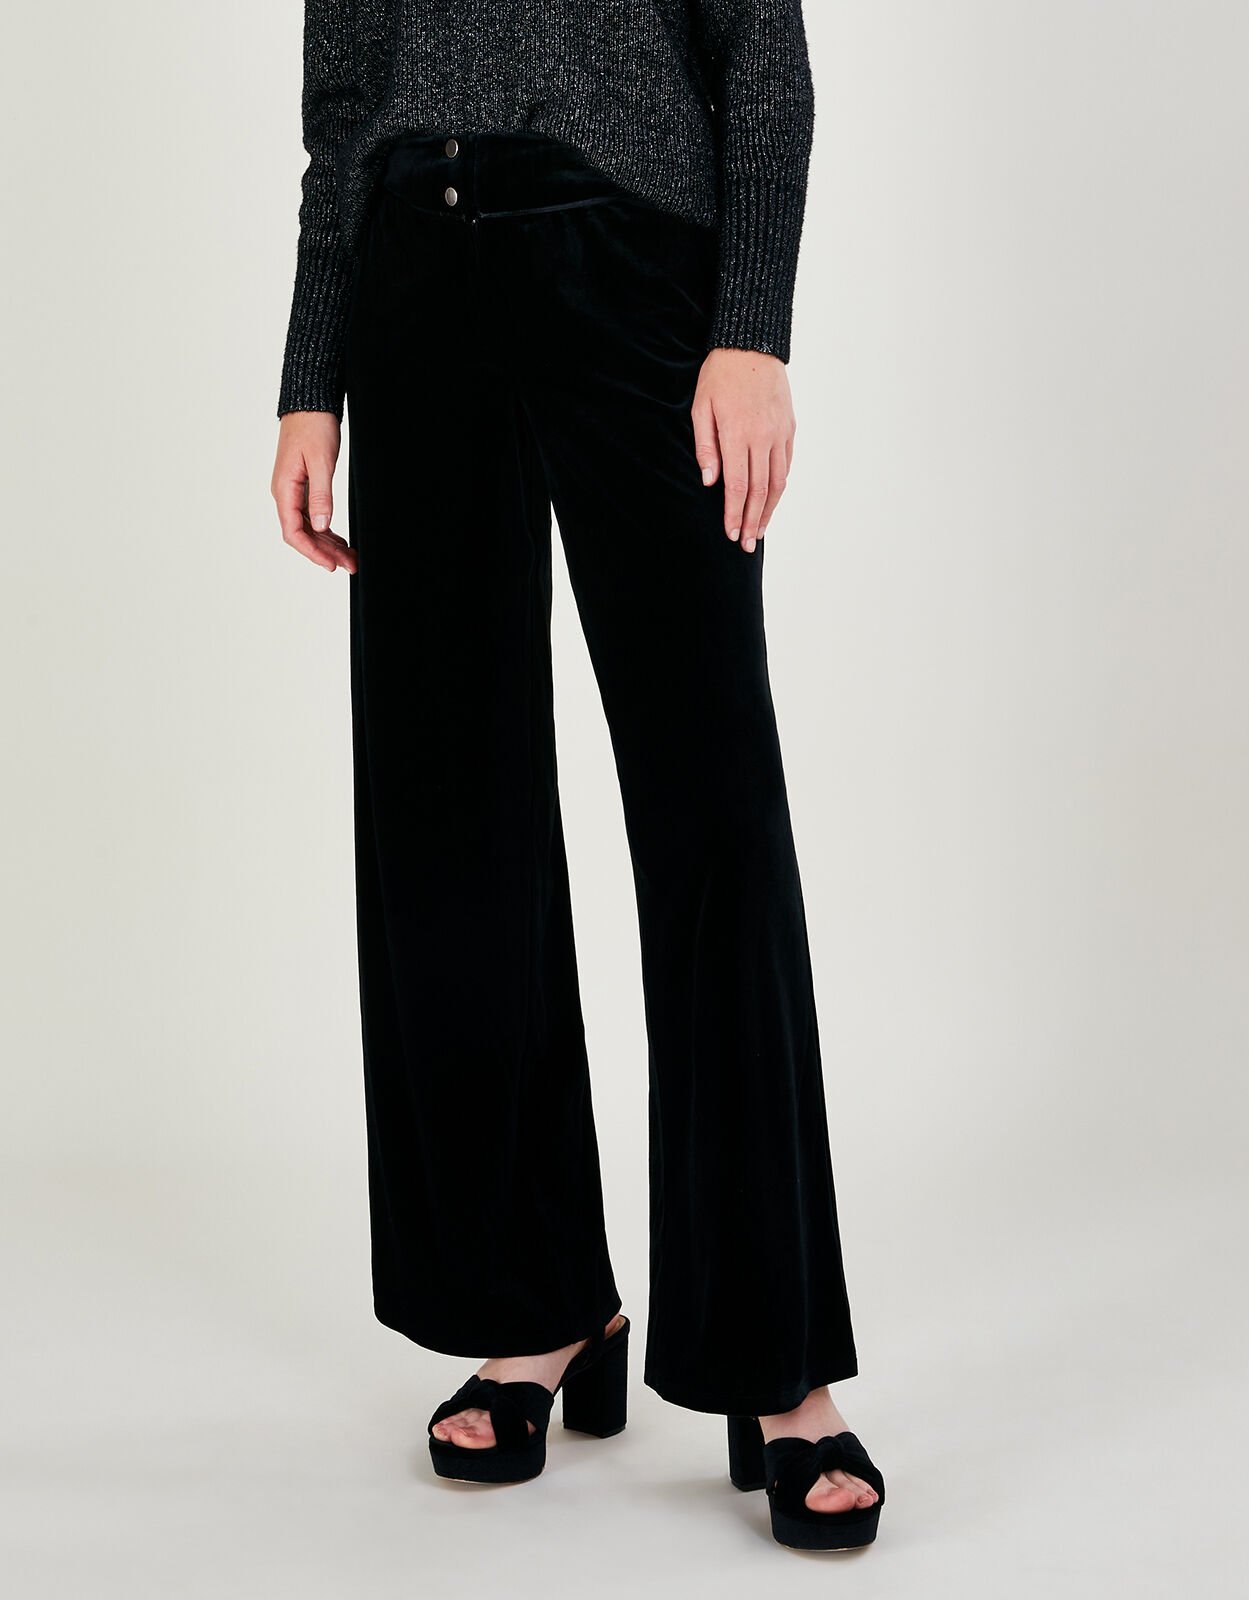 Buy Black Trousers  Pants for Men by BLEU VELVET Online  Ajiocom